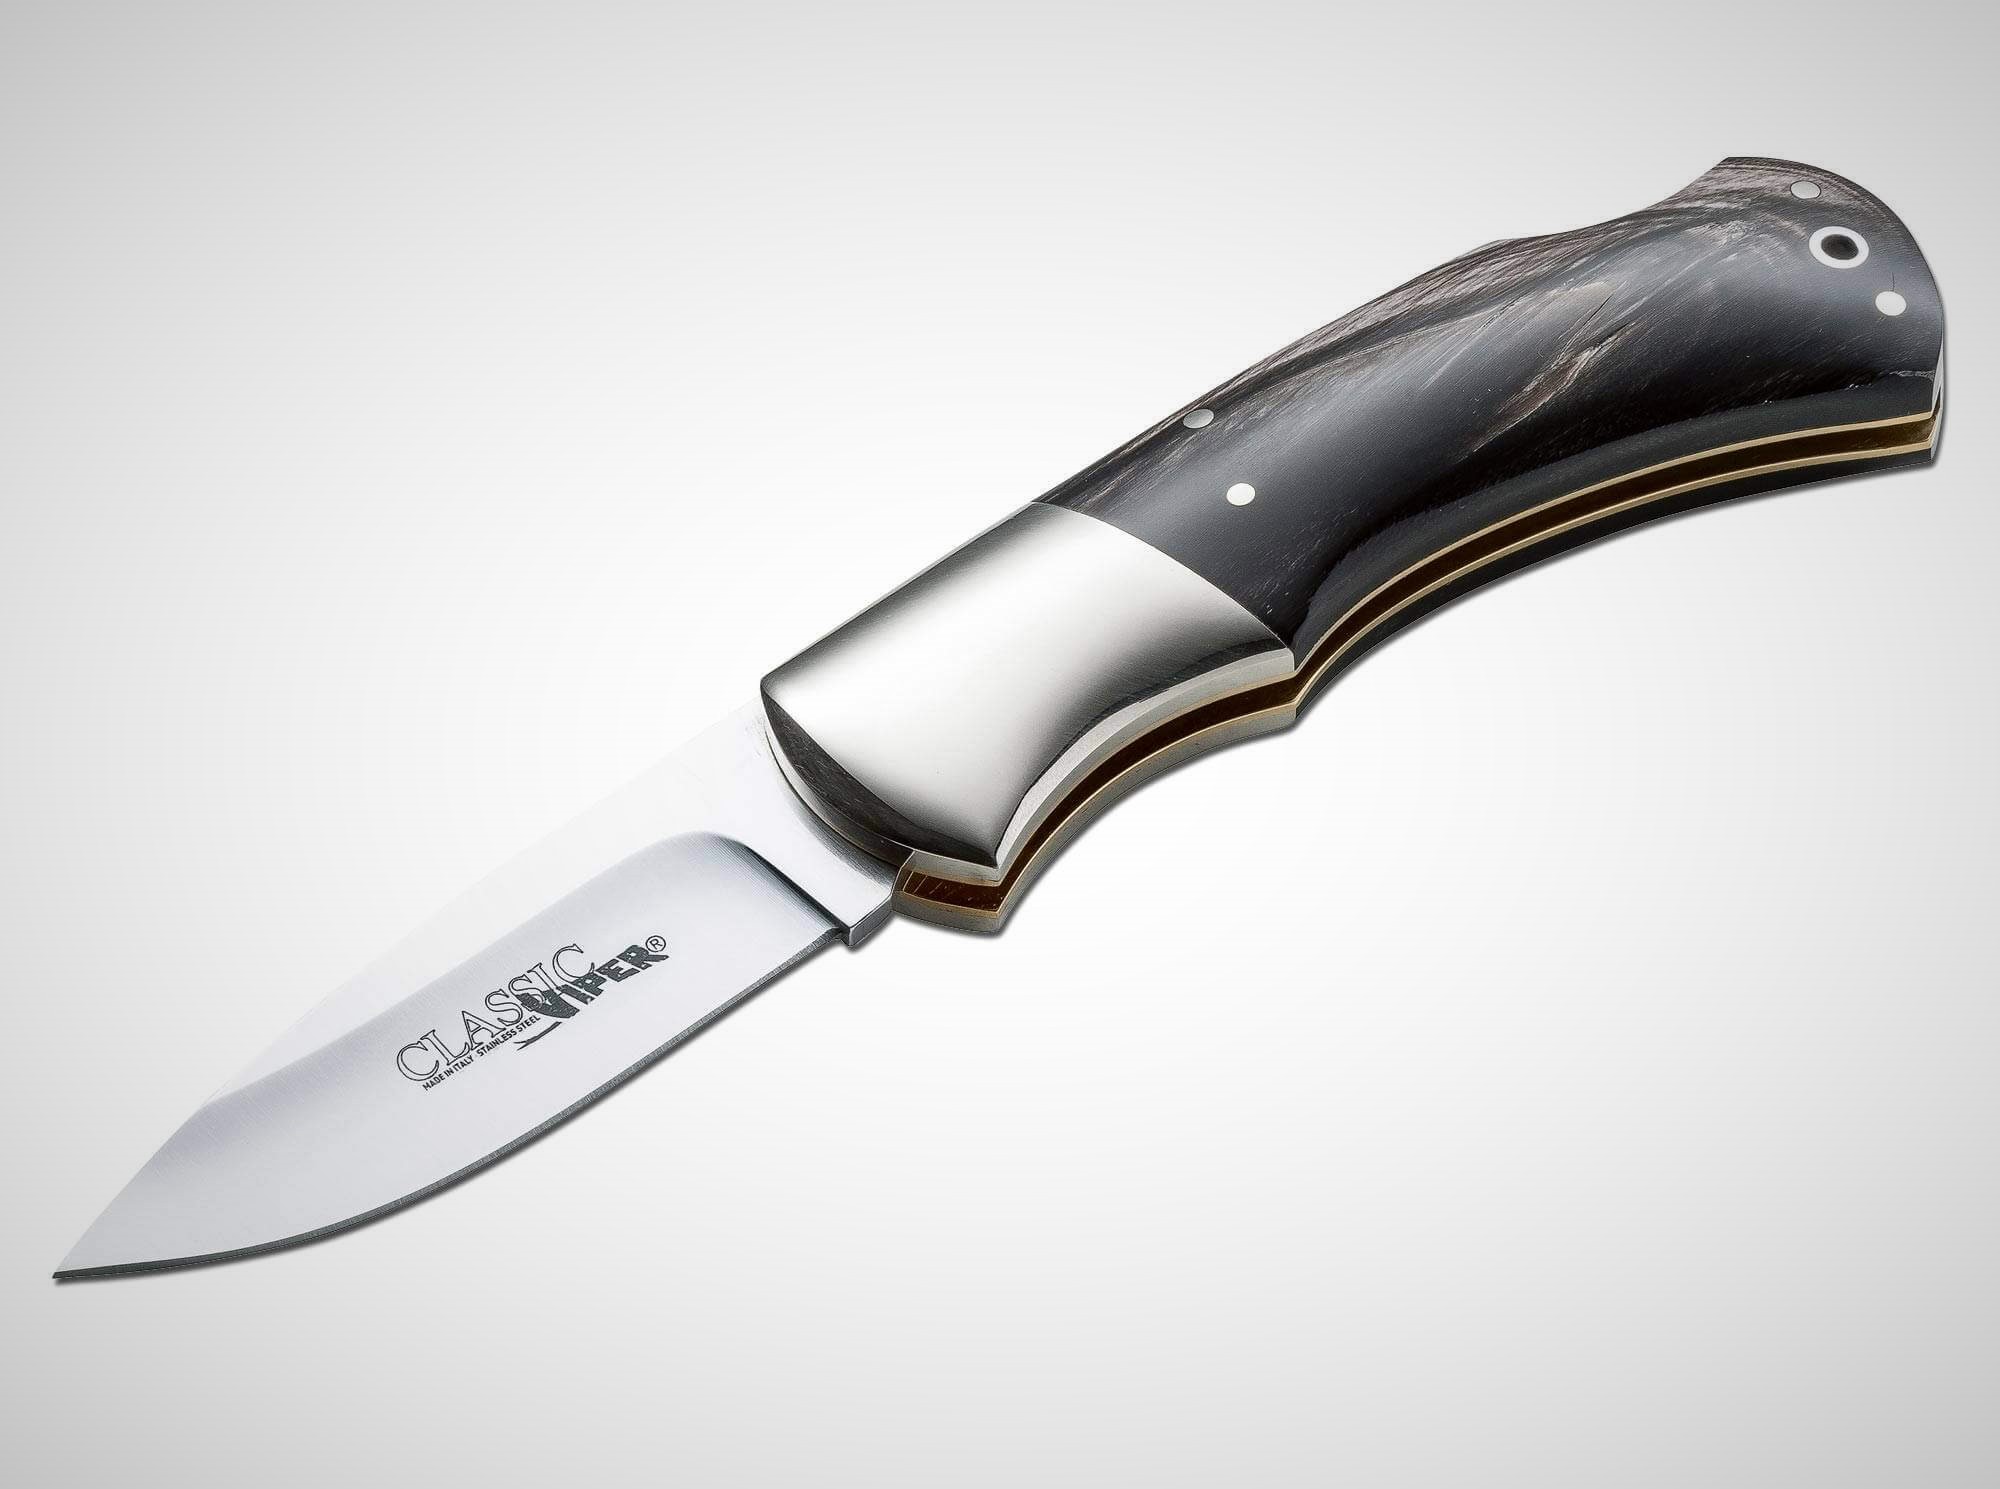 Складные ножи - История ,Основные виды ножевых замков | VK